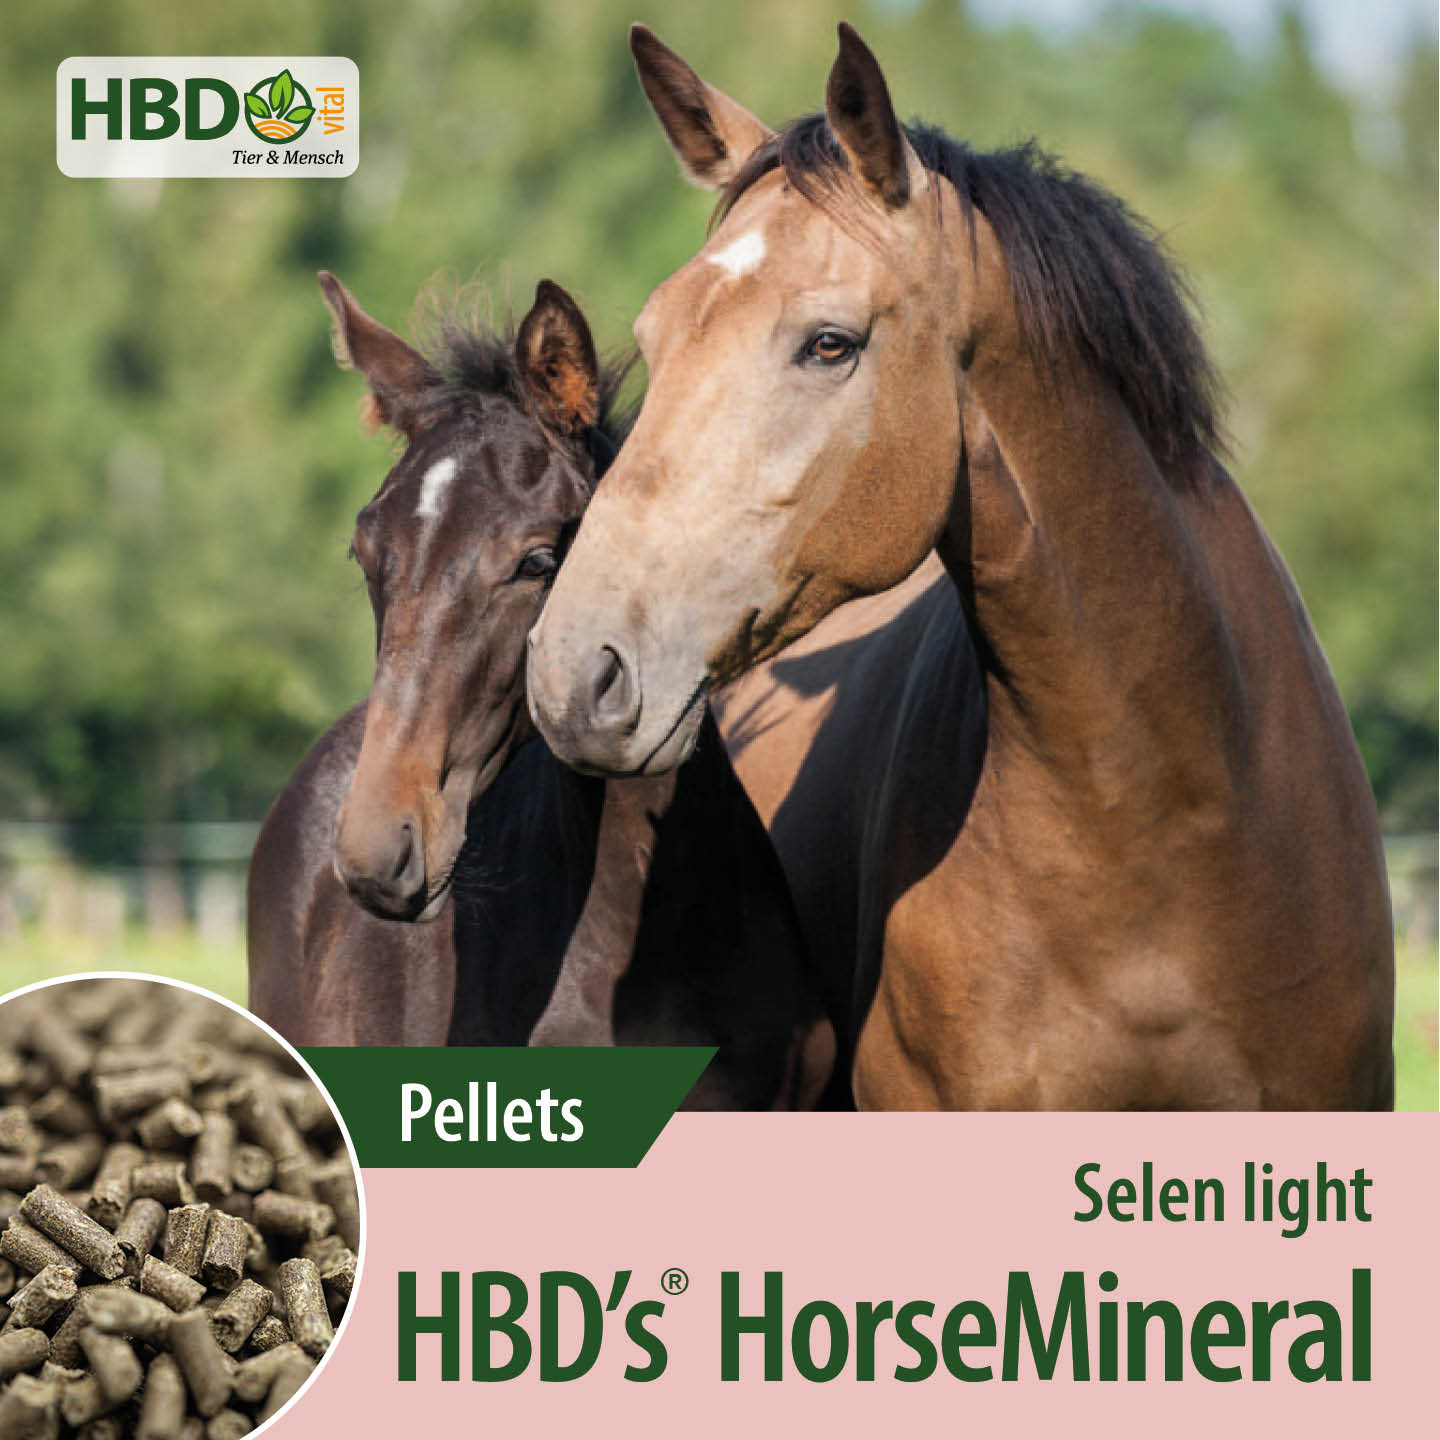 Shopbild für HBD’s HorseMineral Selen light Pellets - Das Bild zeigt den Produktnamen sowie den Hinweis, dass es sich um ein Produkt mit weniger Selen handelt. Zwei Pferde sind zu sehen, eines hellbraun, das andere dunkelbraun.